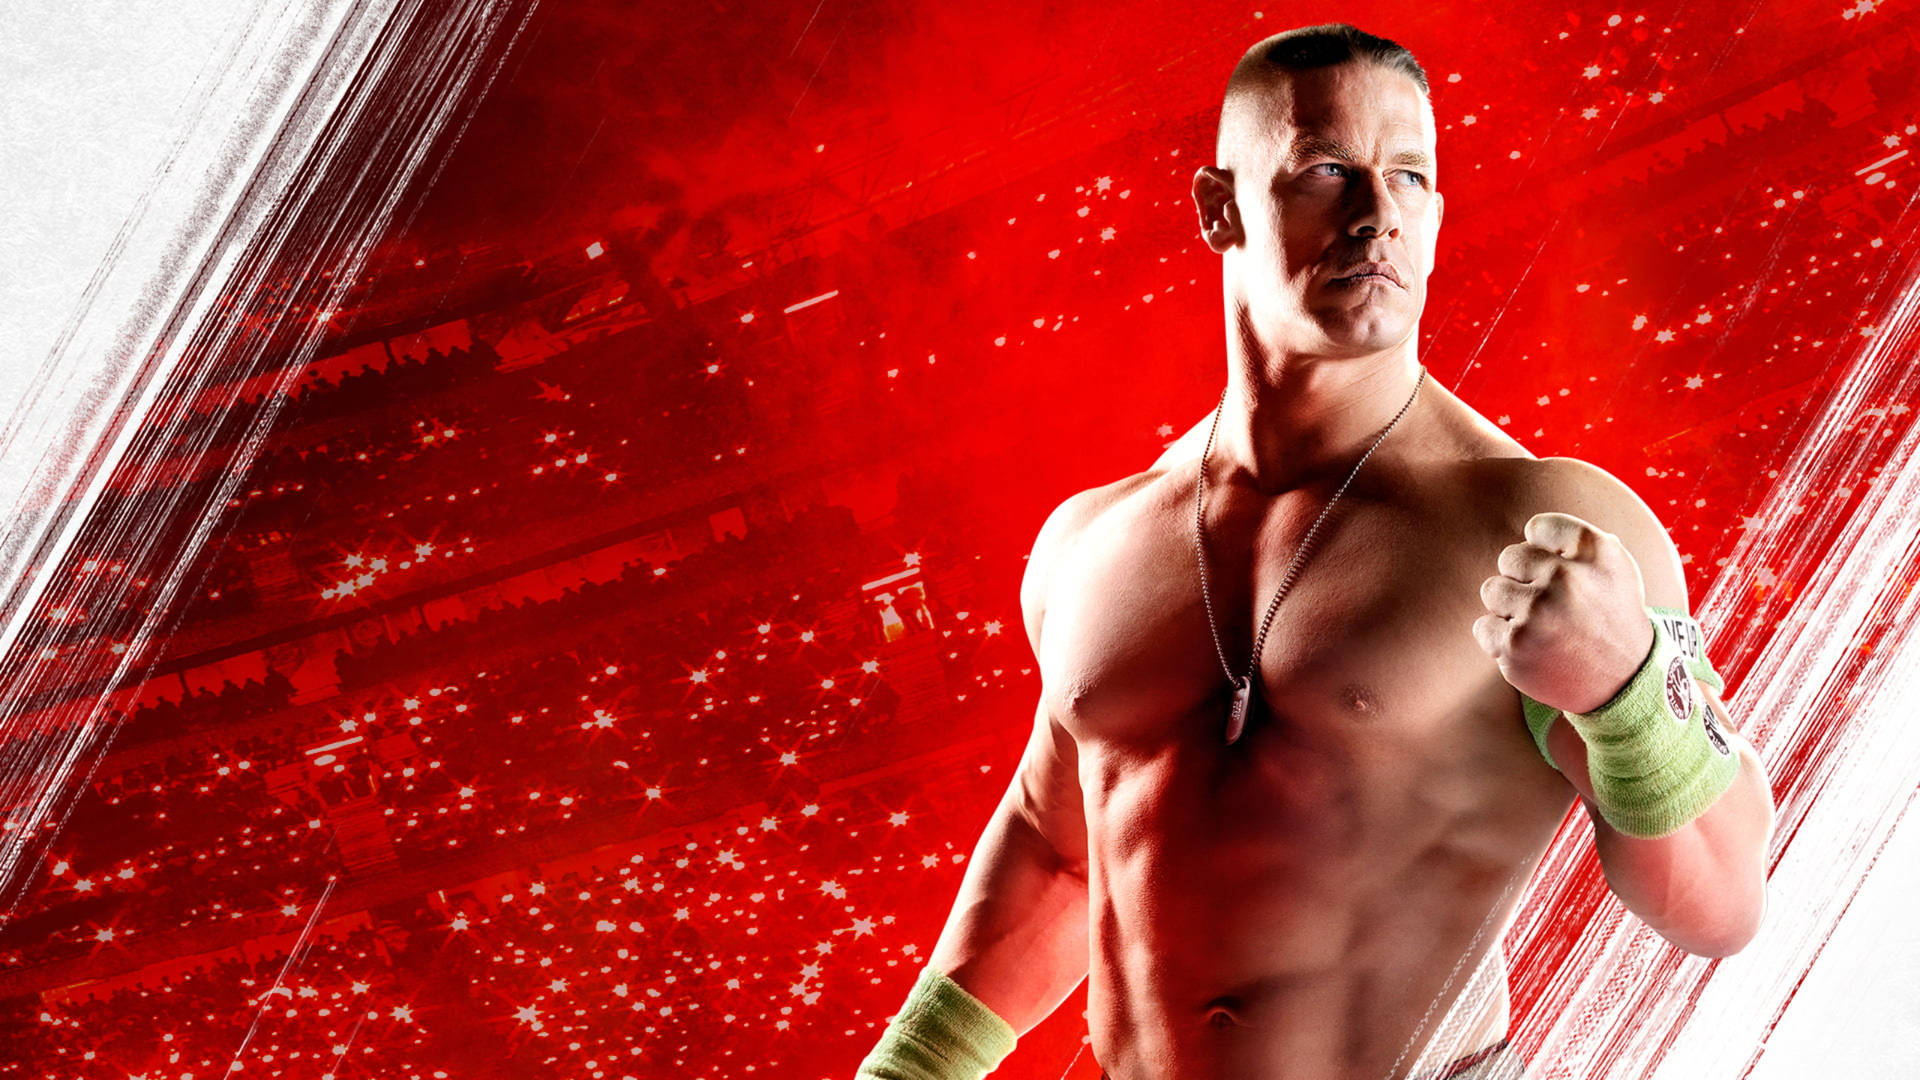 Wwe Wrestler John Cena Digital Cover Background